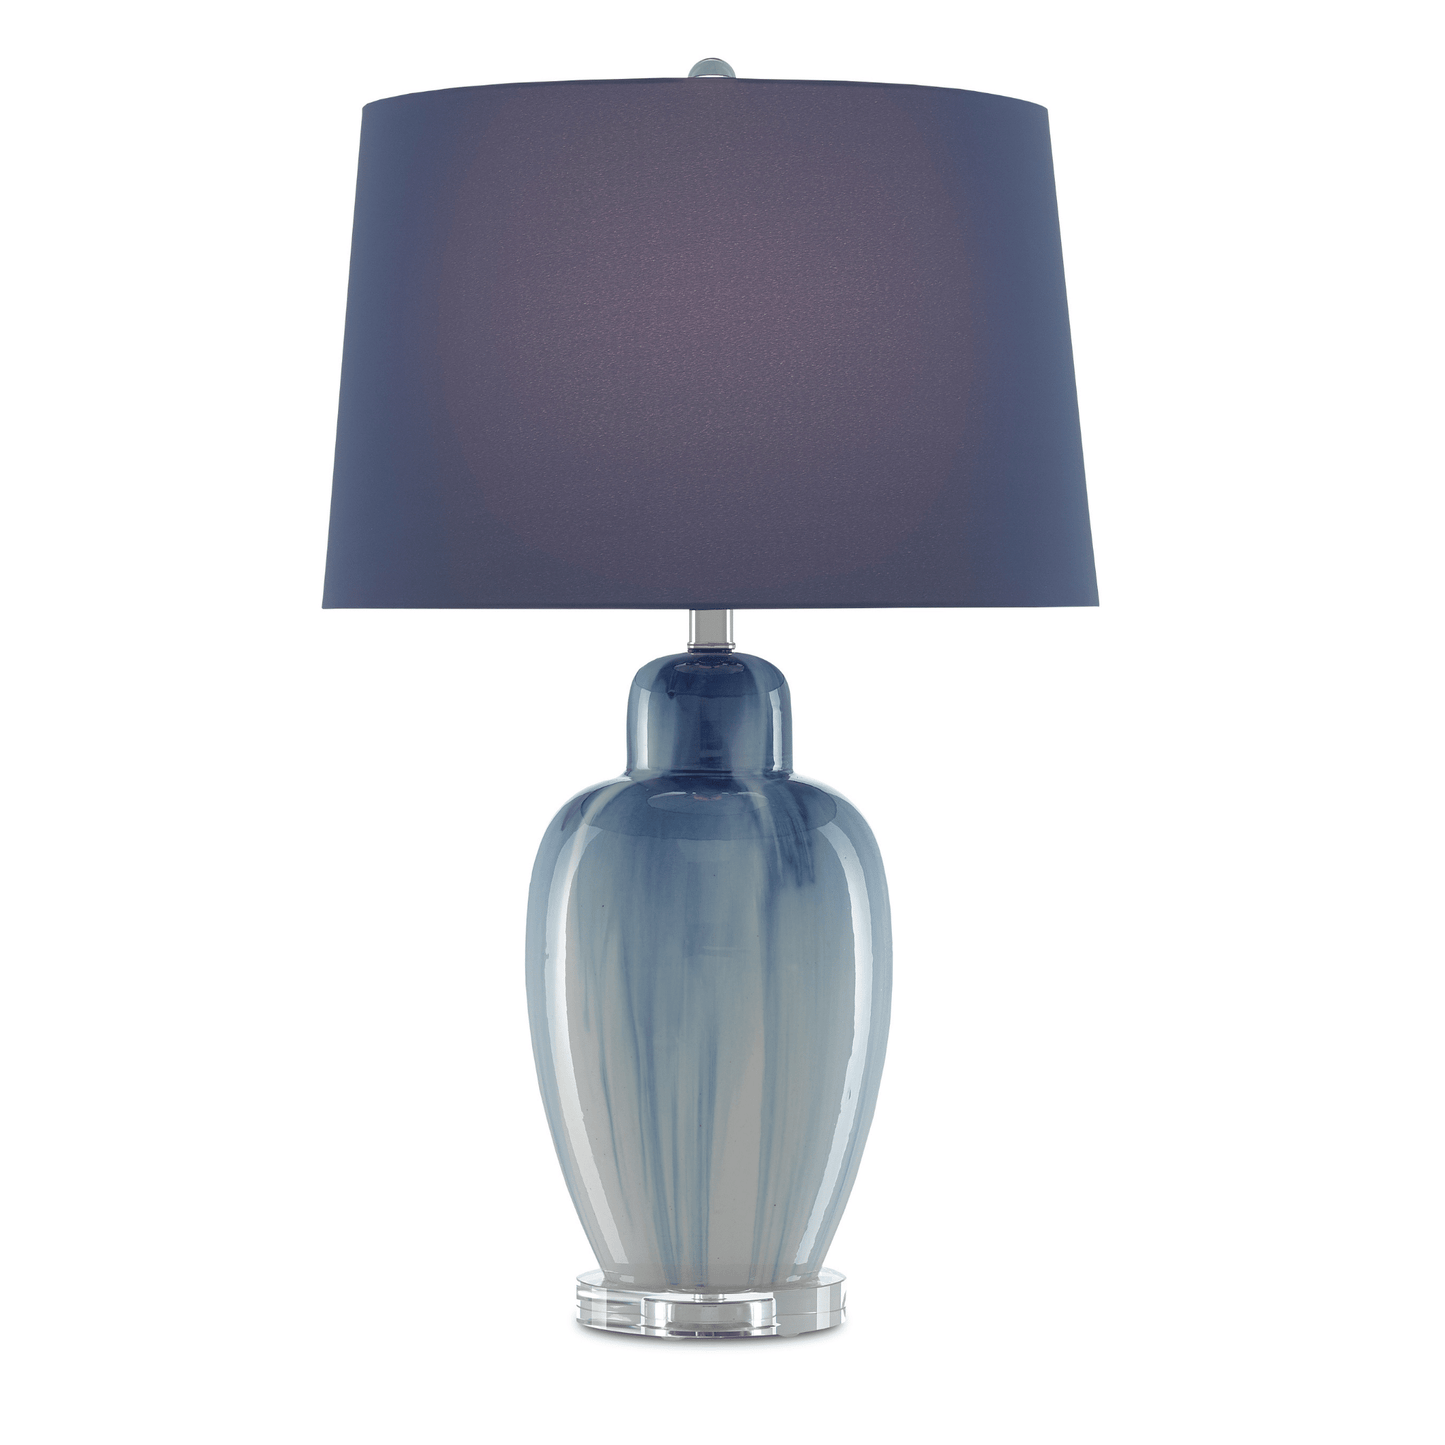 Solita Blue Table Lamp H: 27.75" Dia: 17"